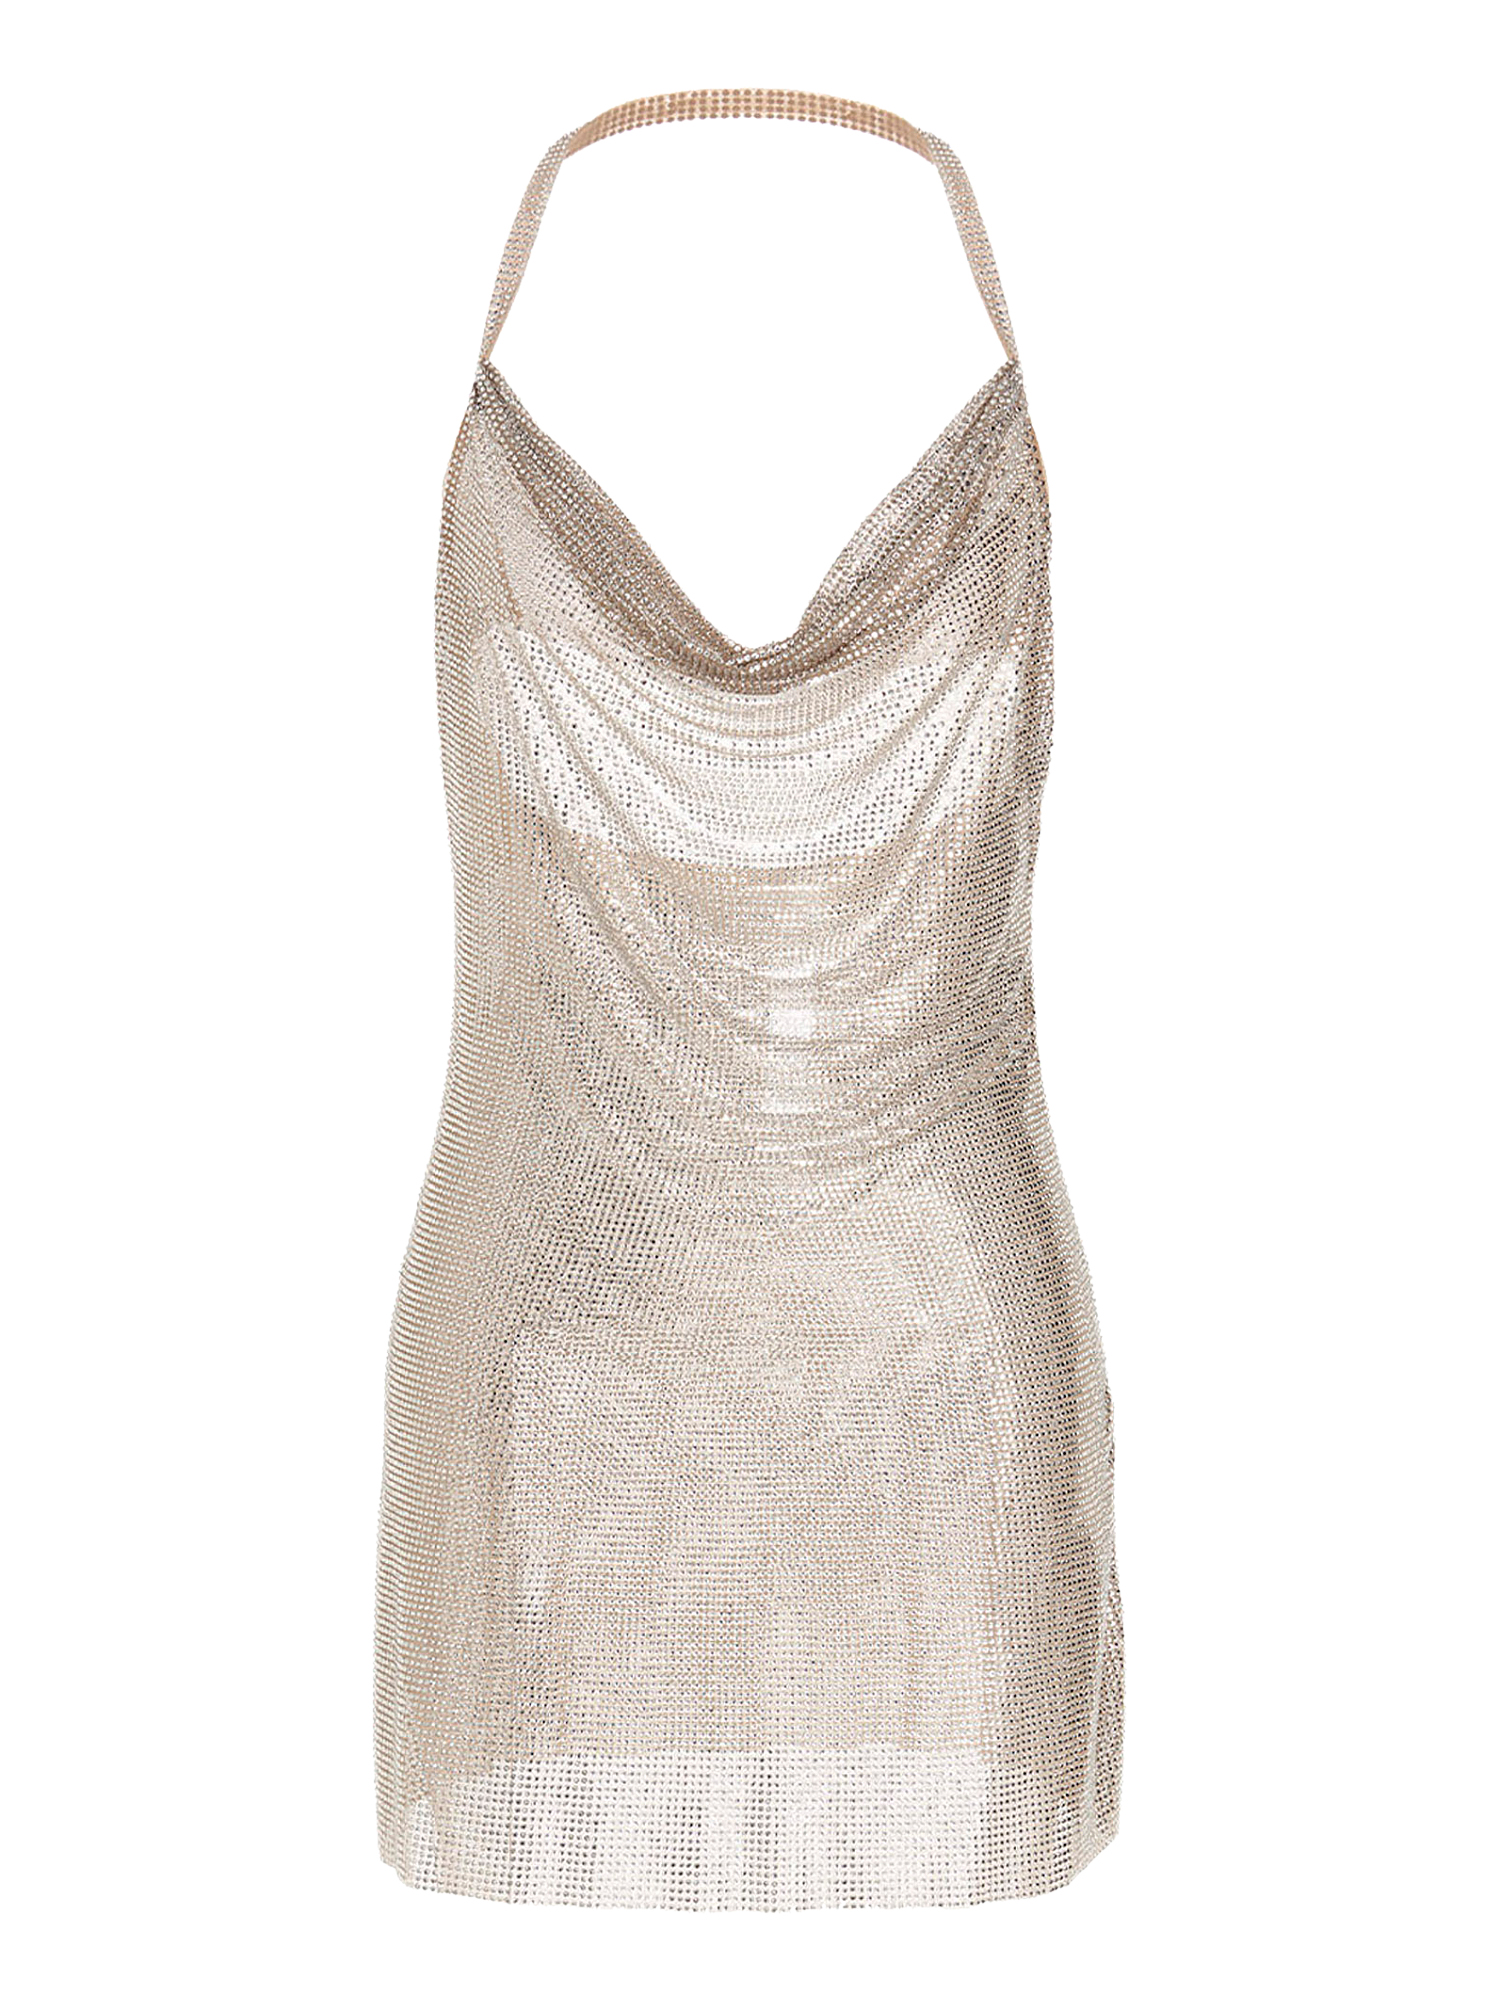 Robes Pour Femme - Giuseppe Di Morabito - En Synthetic Fibers Silver - Taille:  -